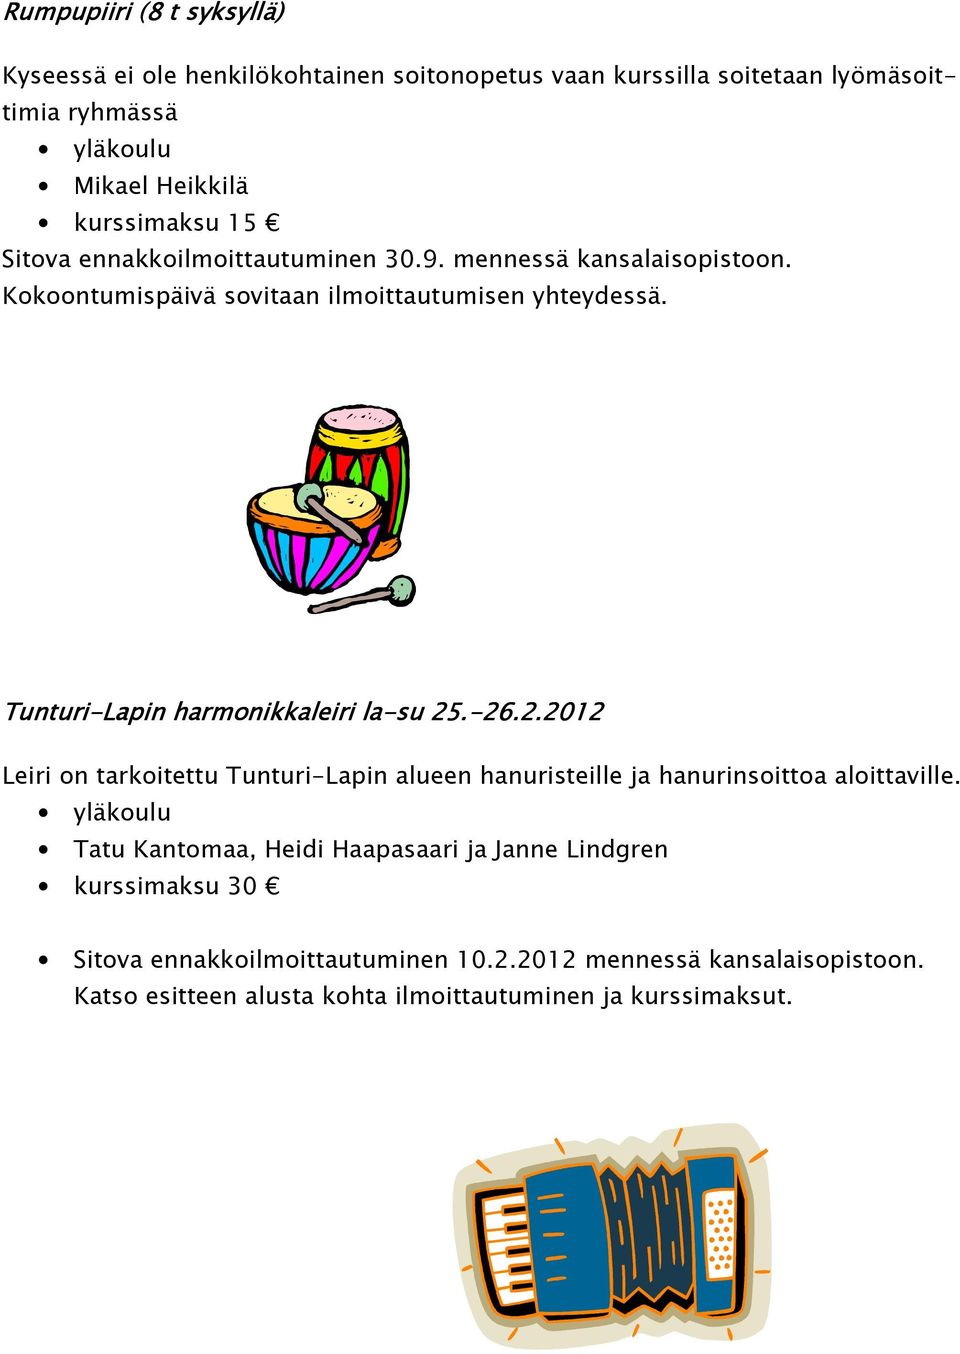 Tunturi-Lapin harmonikkaleiri la-su 25.-26.2.2012 26.2.2012 Leiri on tarkoitettu Tunturi-Lapin alueen hanuristeille ja hanurinsoittoa aloittaville.